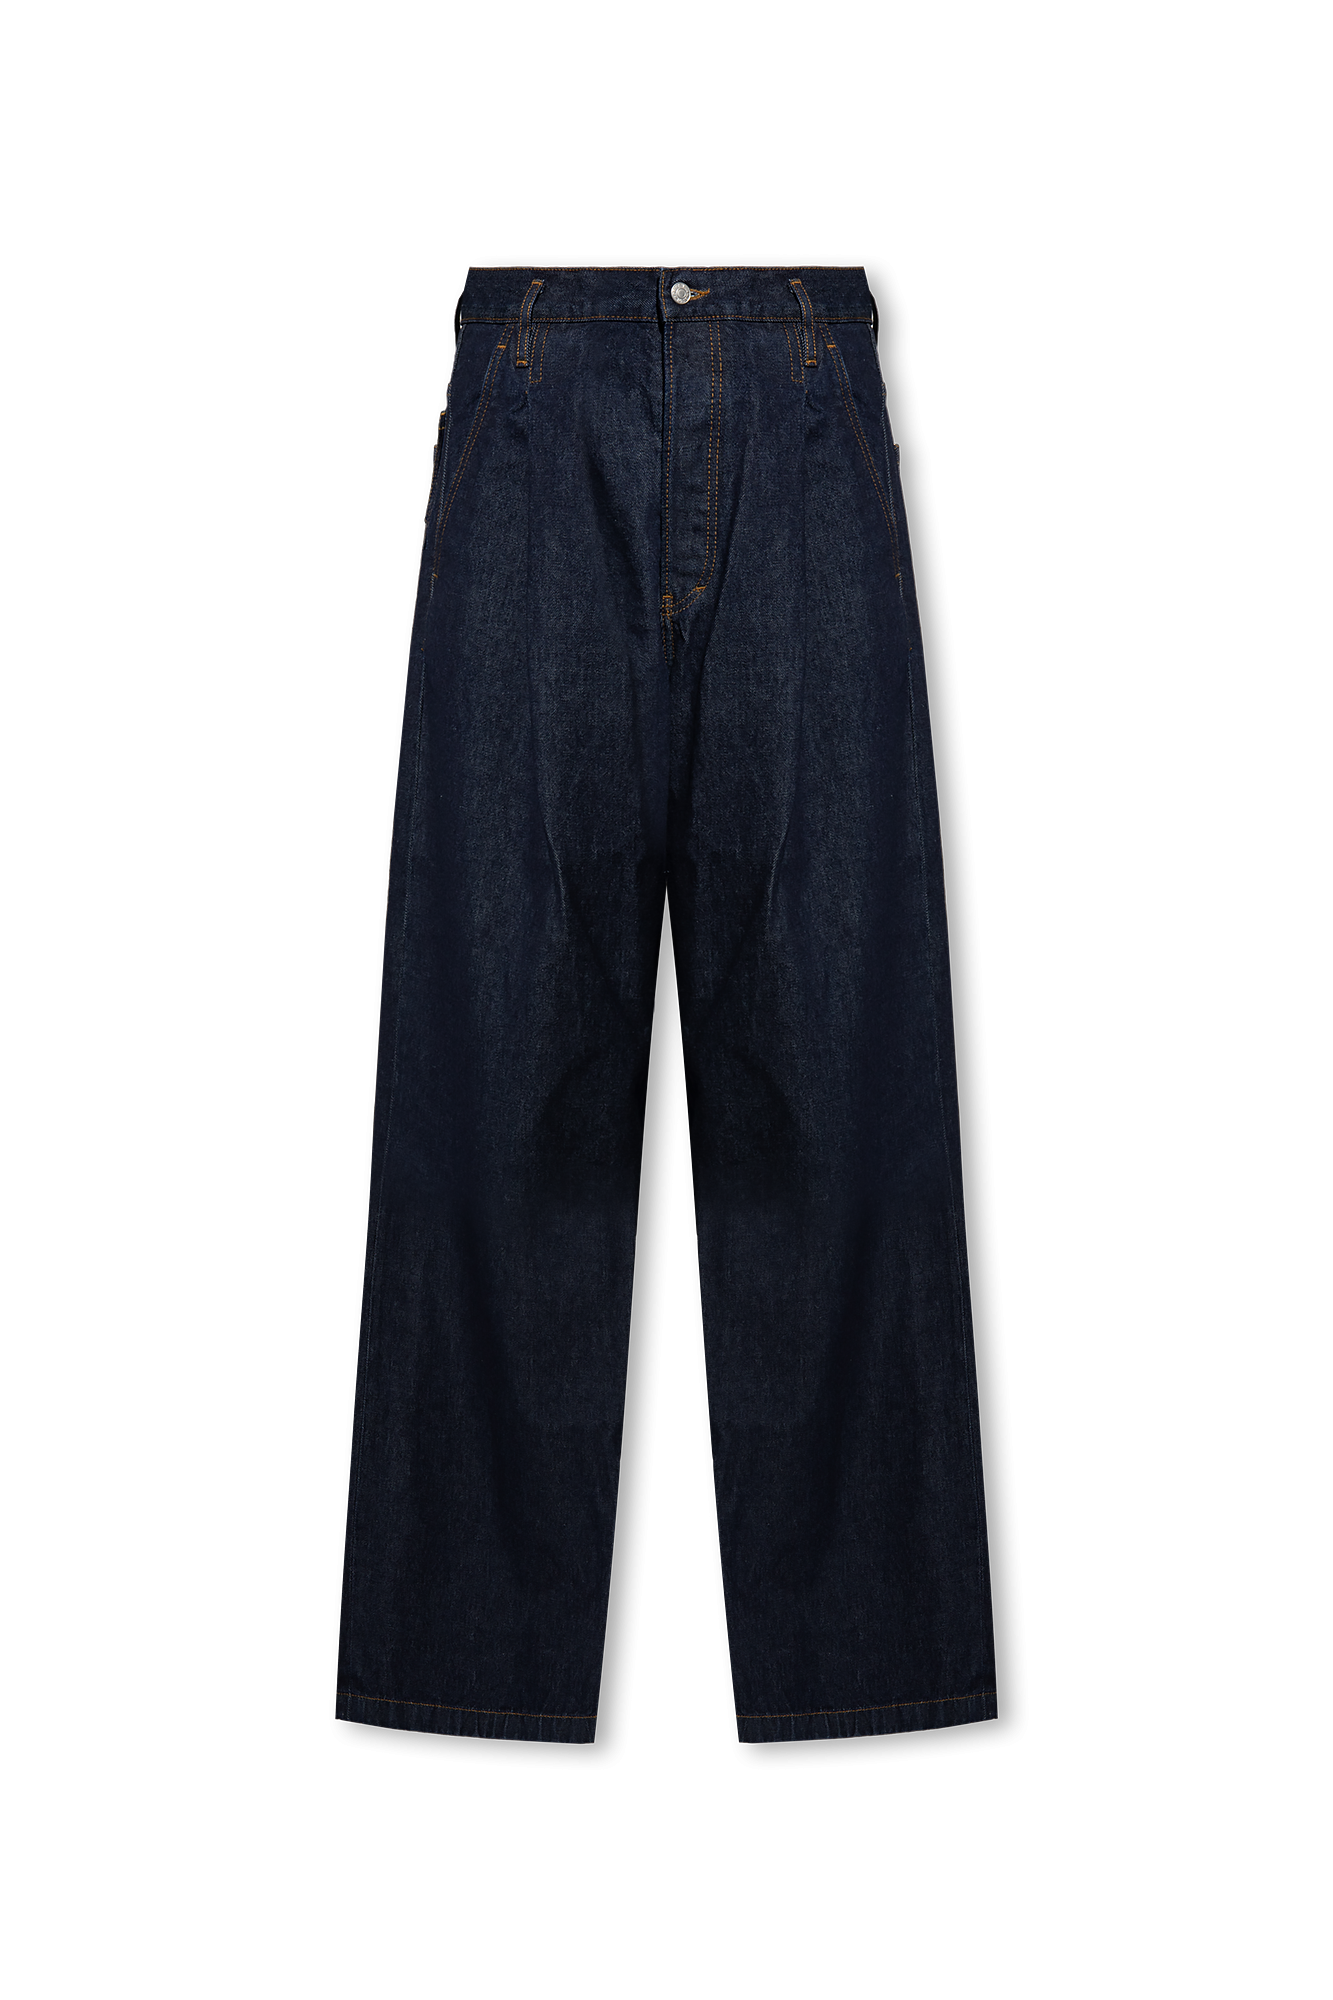 SchaferandweinerShops TW - Dolce u0026 Gabbana Kids check-print dress - Navy  blue Jeans with wide legs Dries Van Noten